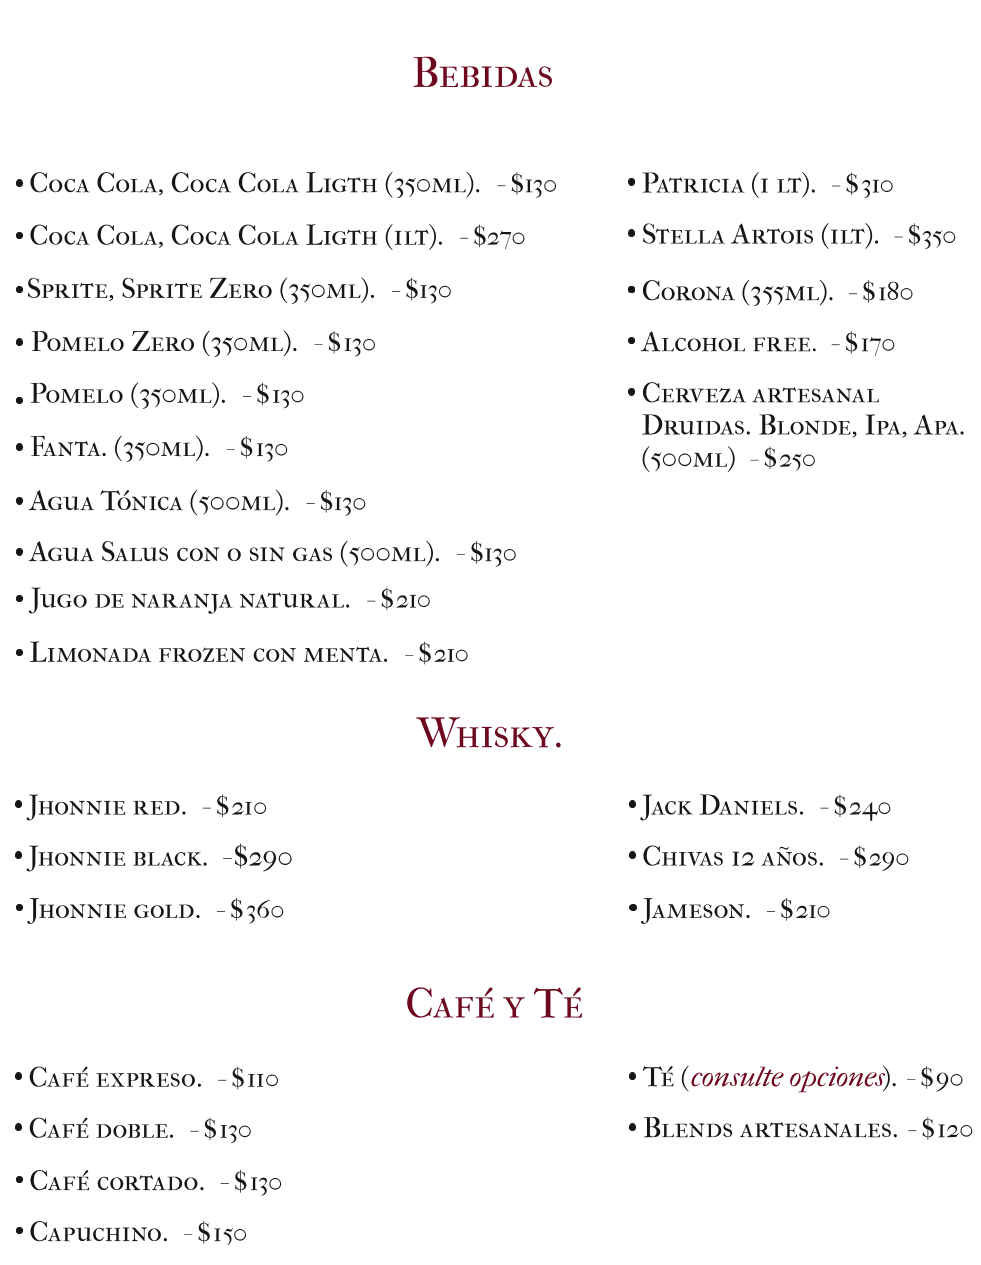 Lista de refrescos, whiskys y cervezas